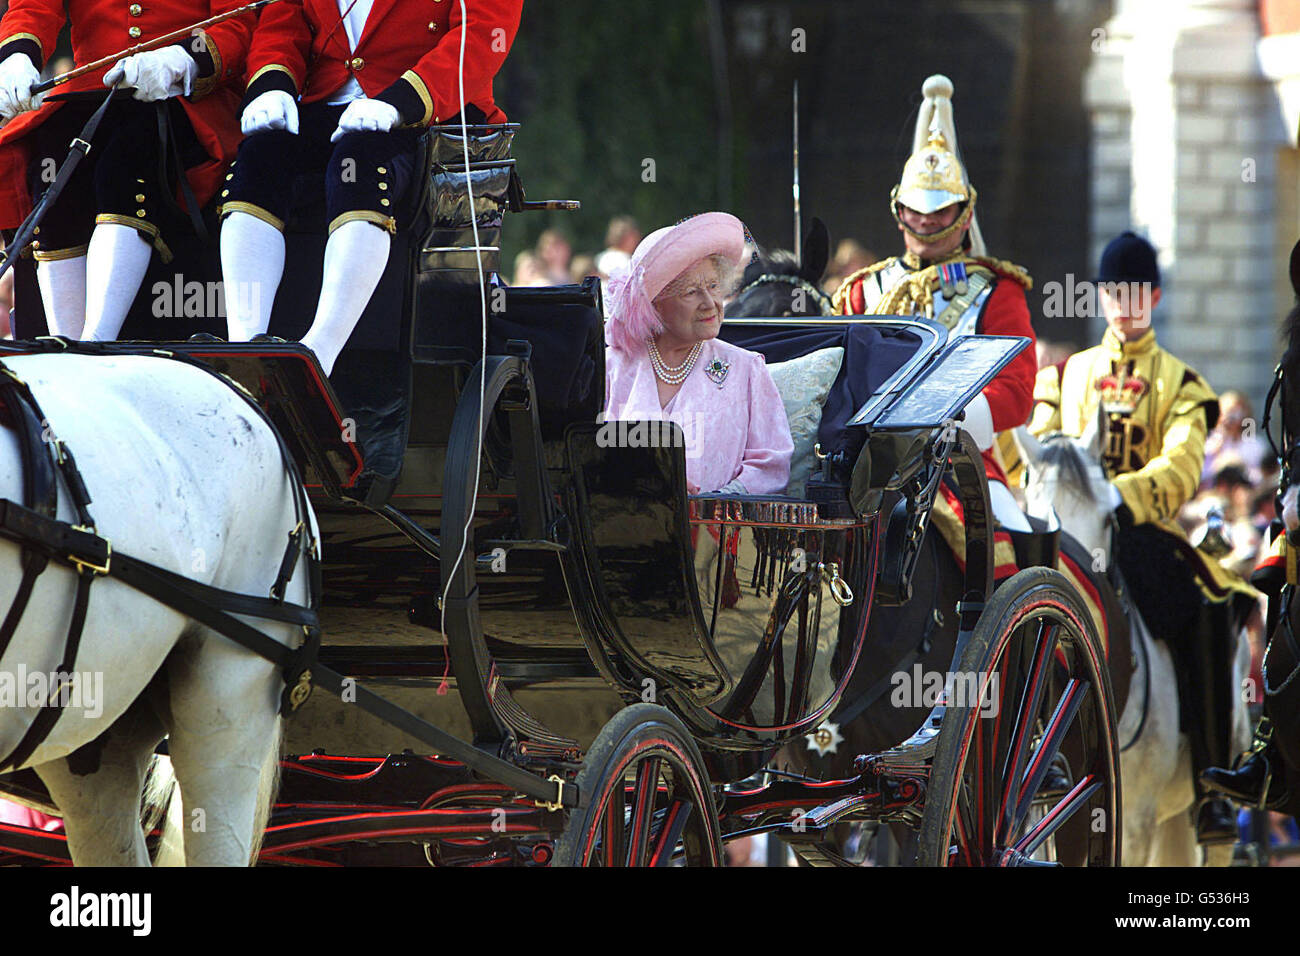 La Regina Madre arriva con suo nipote, il Principe del Galles, per una parata sulla Parata delle Guardie a Cavallo di Londra in occasione del suo centesimo compleanno, il 4/8/00. Circa 1,000 persone, animali e aeromobili partecipano alla vita nazionale della Gran Bretagna. Foto Stock